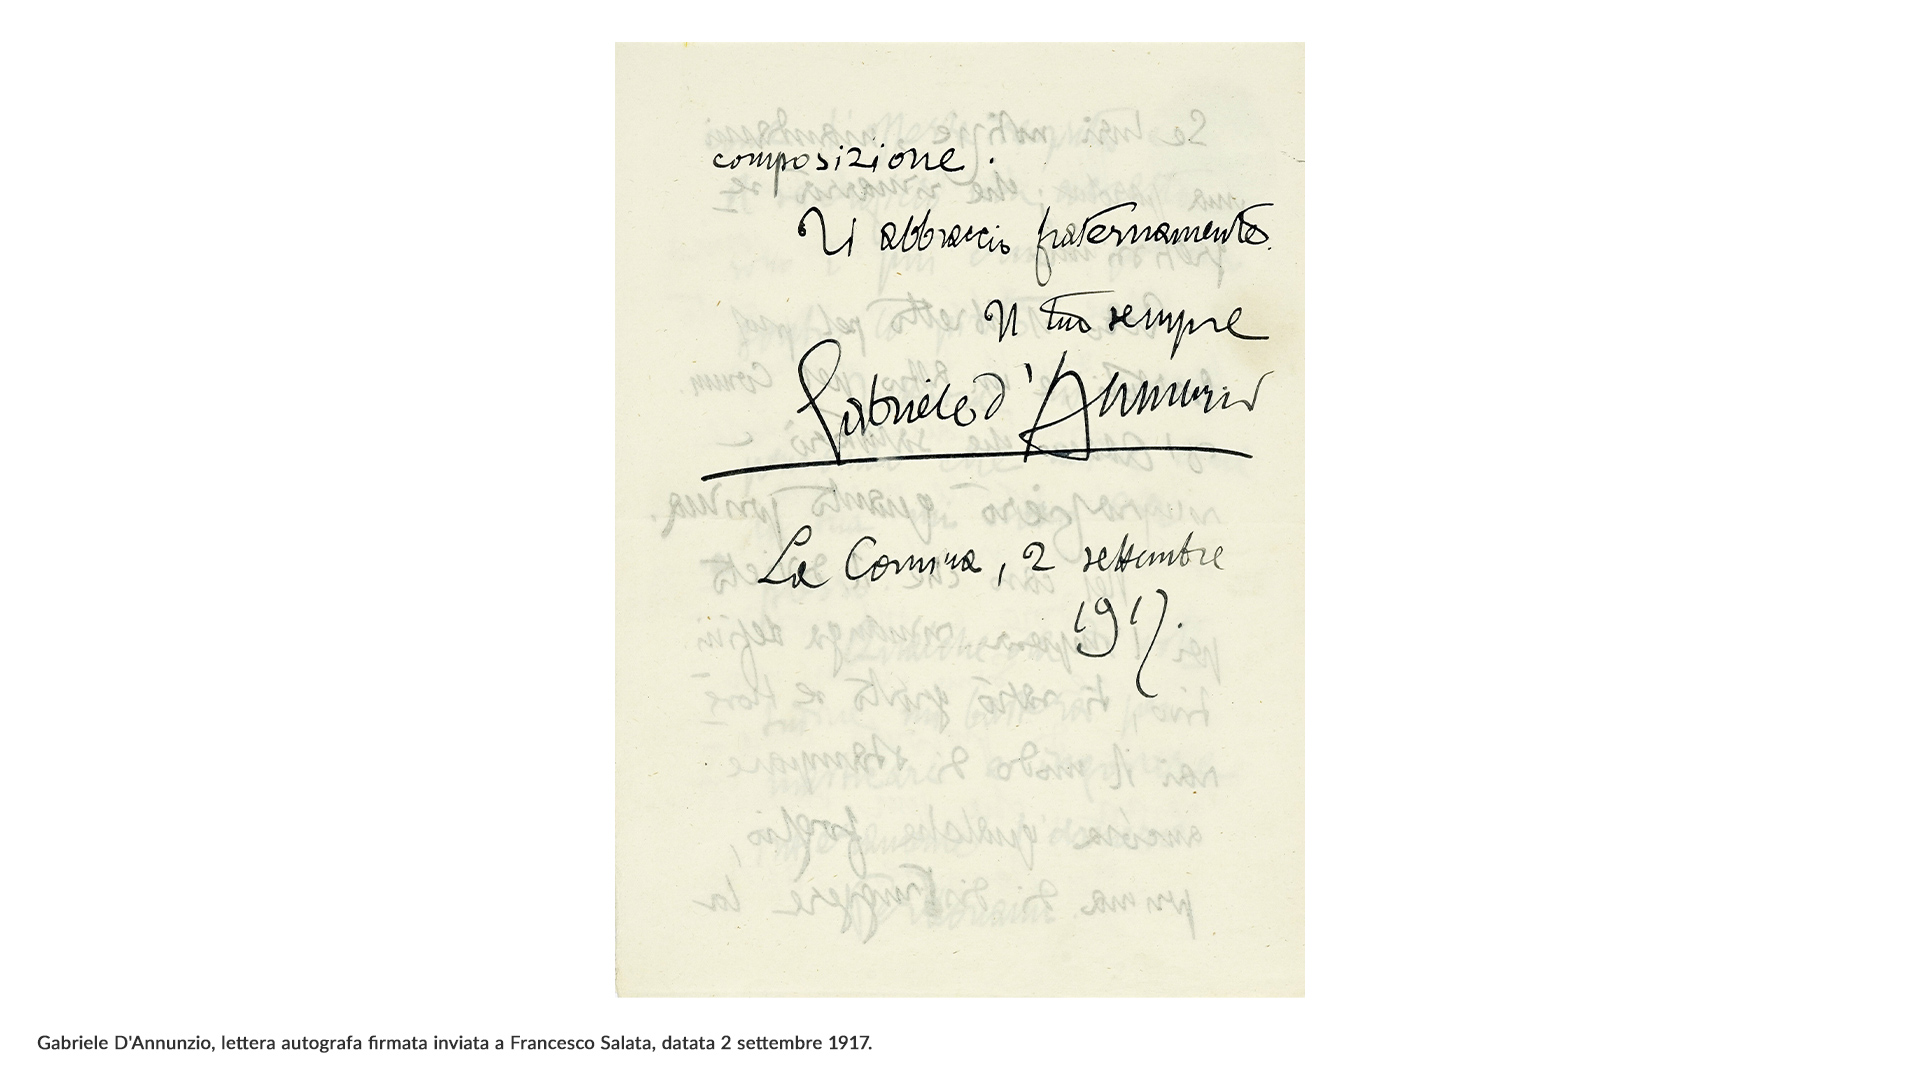 La Direzione generale Archivi ha acquistato cinque lotti di preziosi documenti relativi a Benedetto Croce e Gabriele D'Annunzio